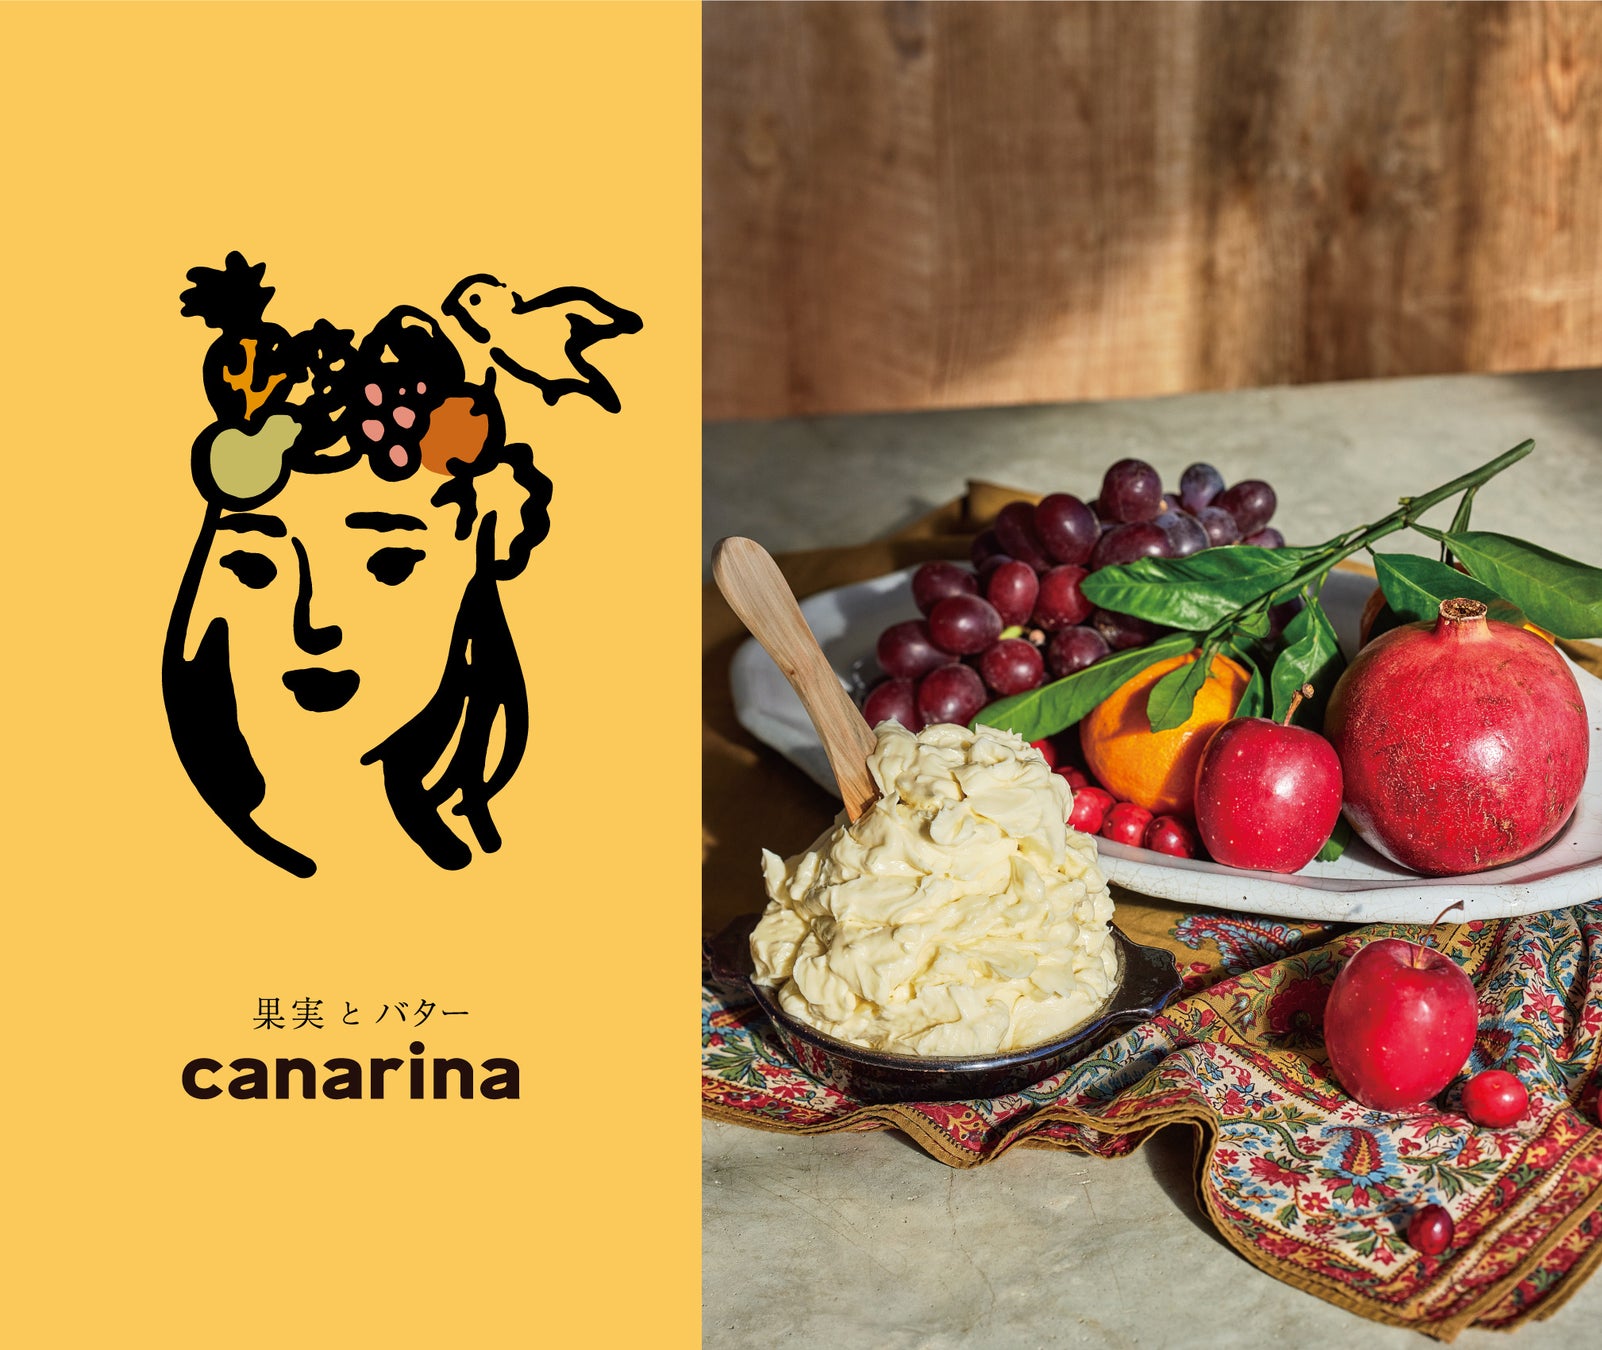 新ブランド「果実とバター canarina」が札幌大丸店にて期間限定先行出店いたします。